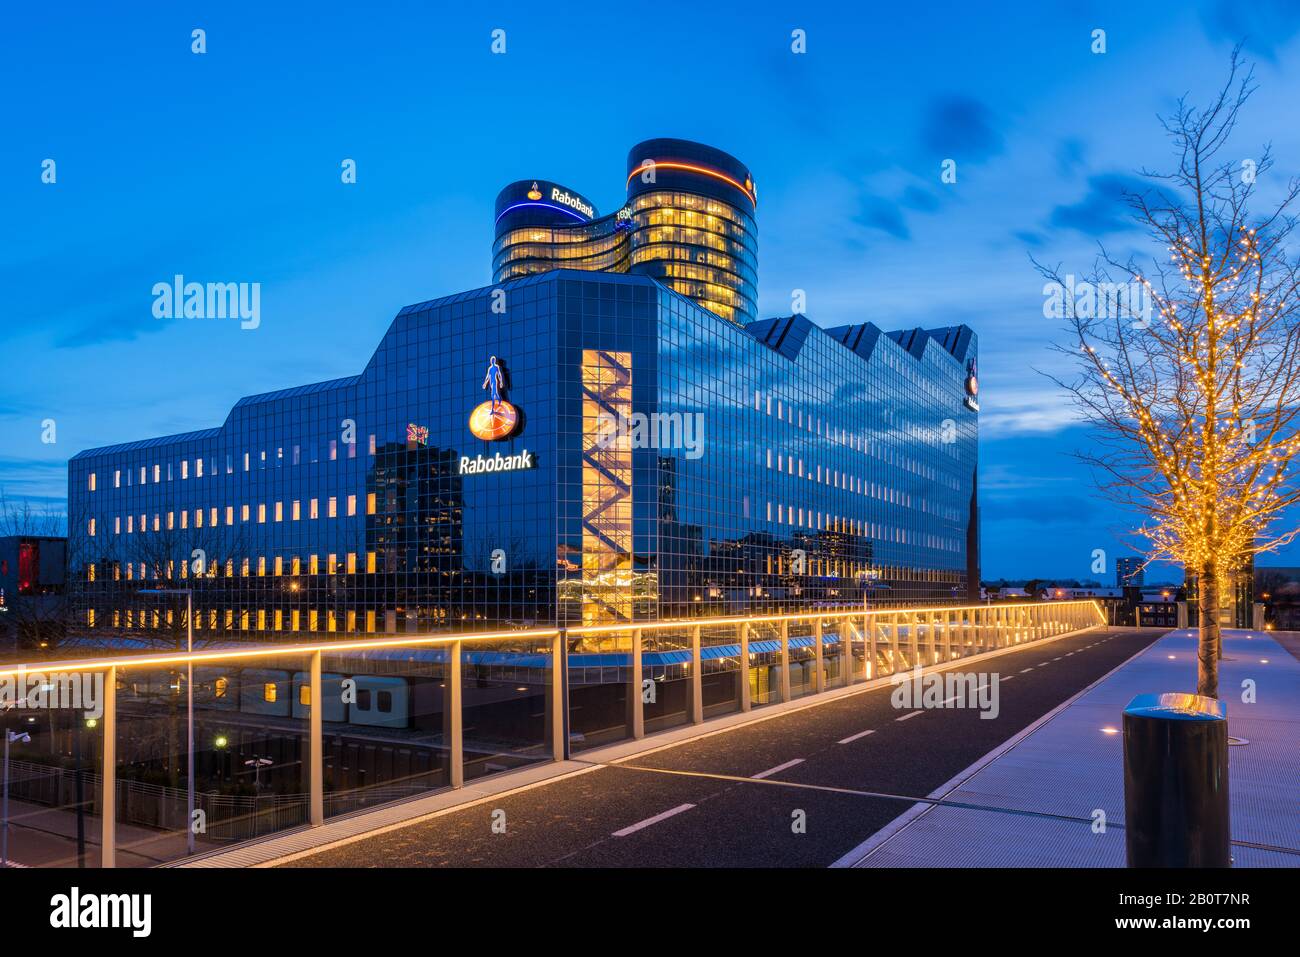 Rabobank World Headquarters in Utrechter, Niederlande. Rabobank ist ein niederländisches multinationales Bank- und Finanzdienstleistungsunternehmen. Stockfoto